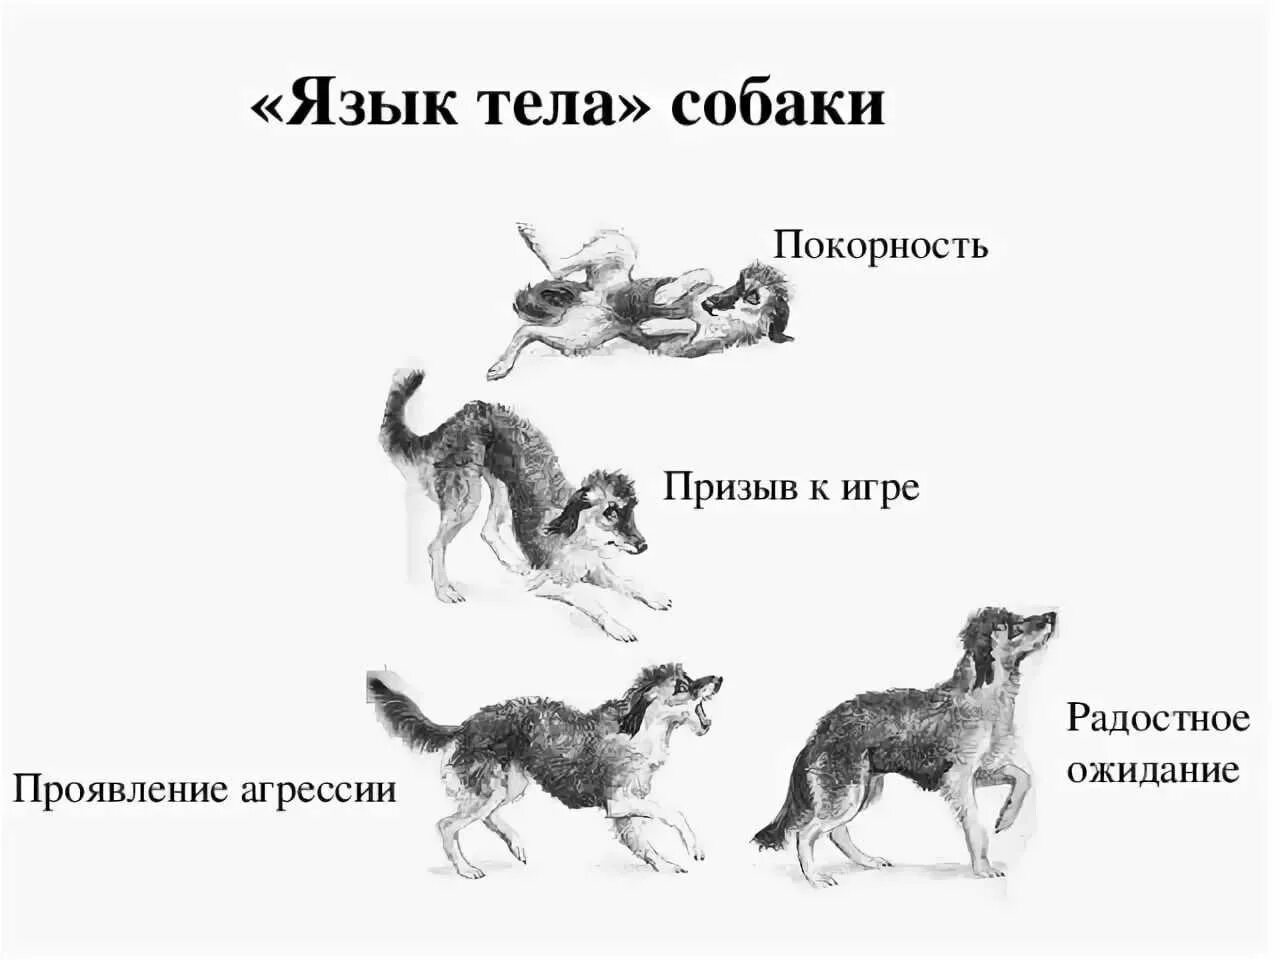 Собаки разом поднялись и с лаем. Поведение собак. Язык тела собаки в картинках. Араедение собак. Виды поведения собак.